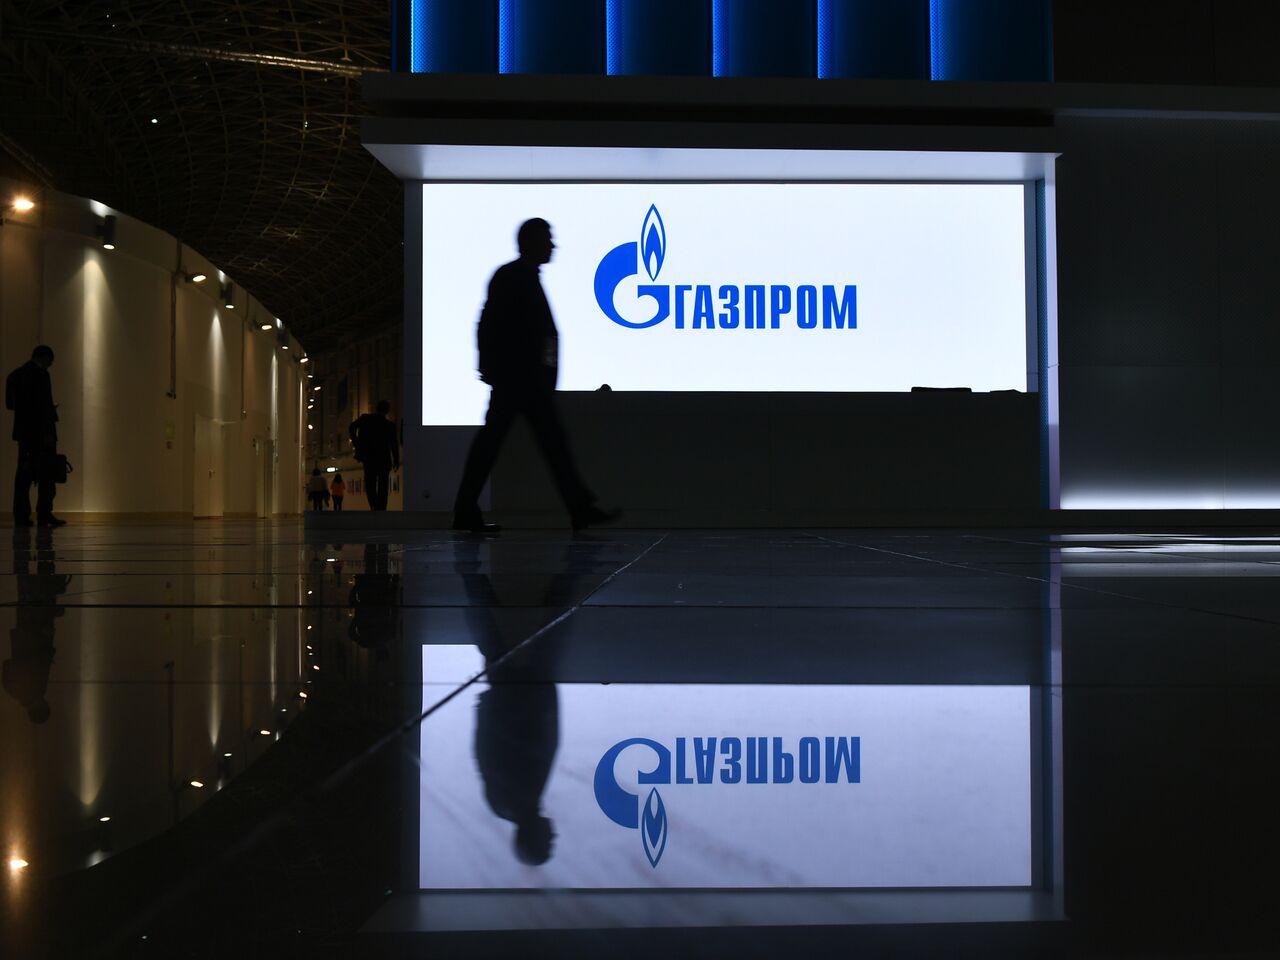 Газпром инвестиции